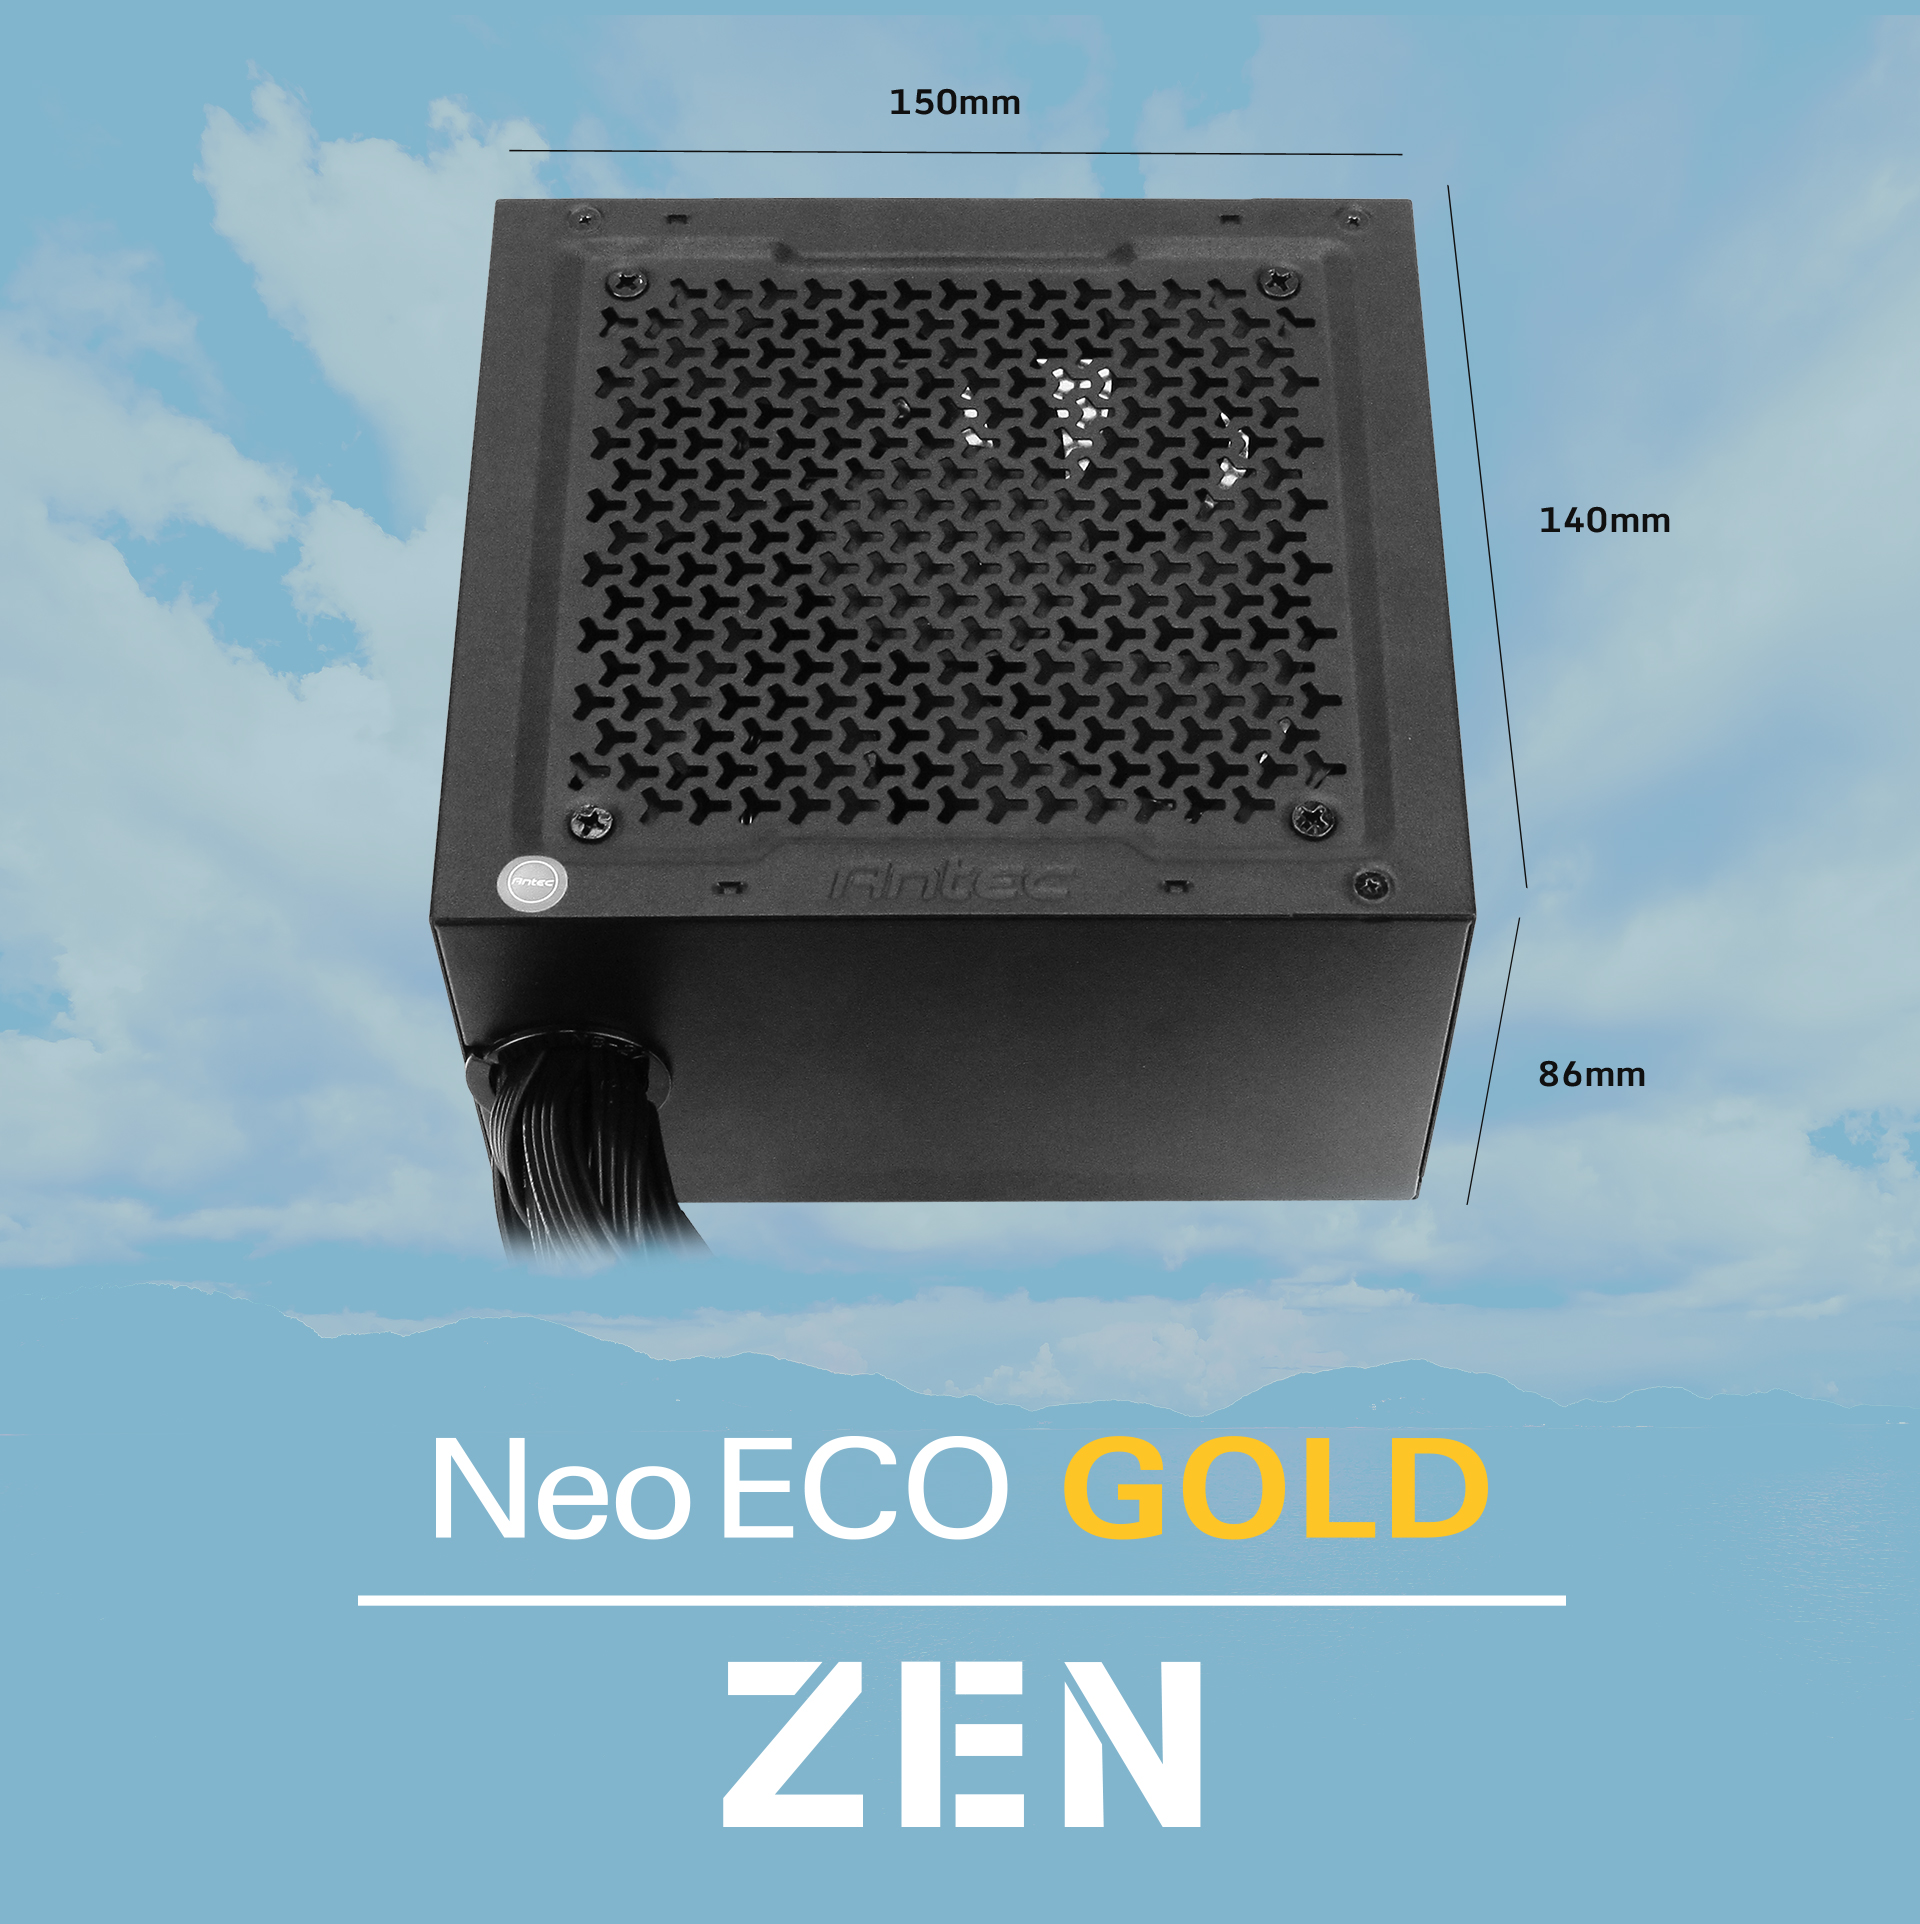 Antec NeoECO Gold ZEN Series NE500G ZEN Power Supply length, width and height